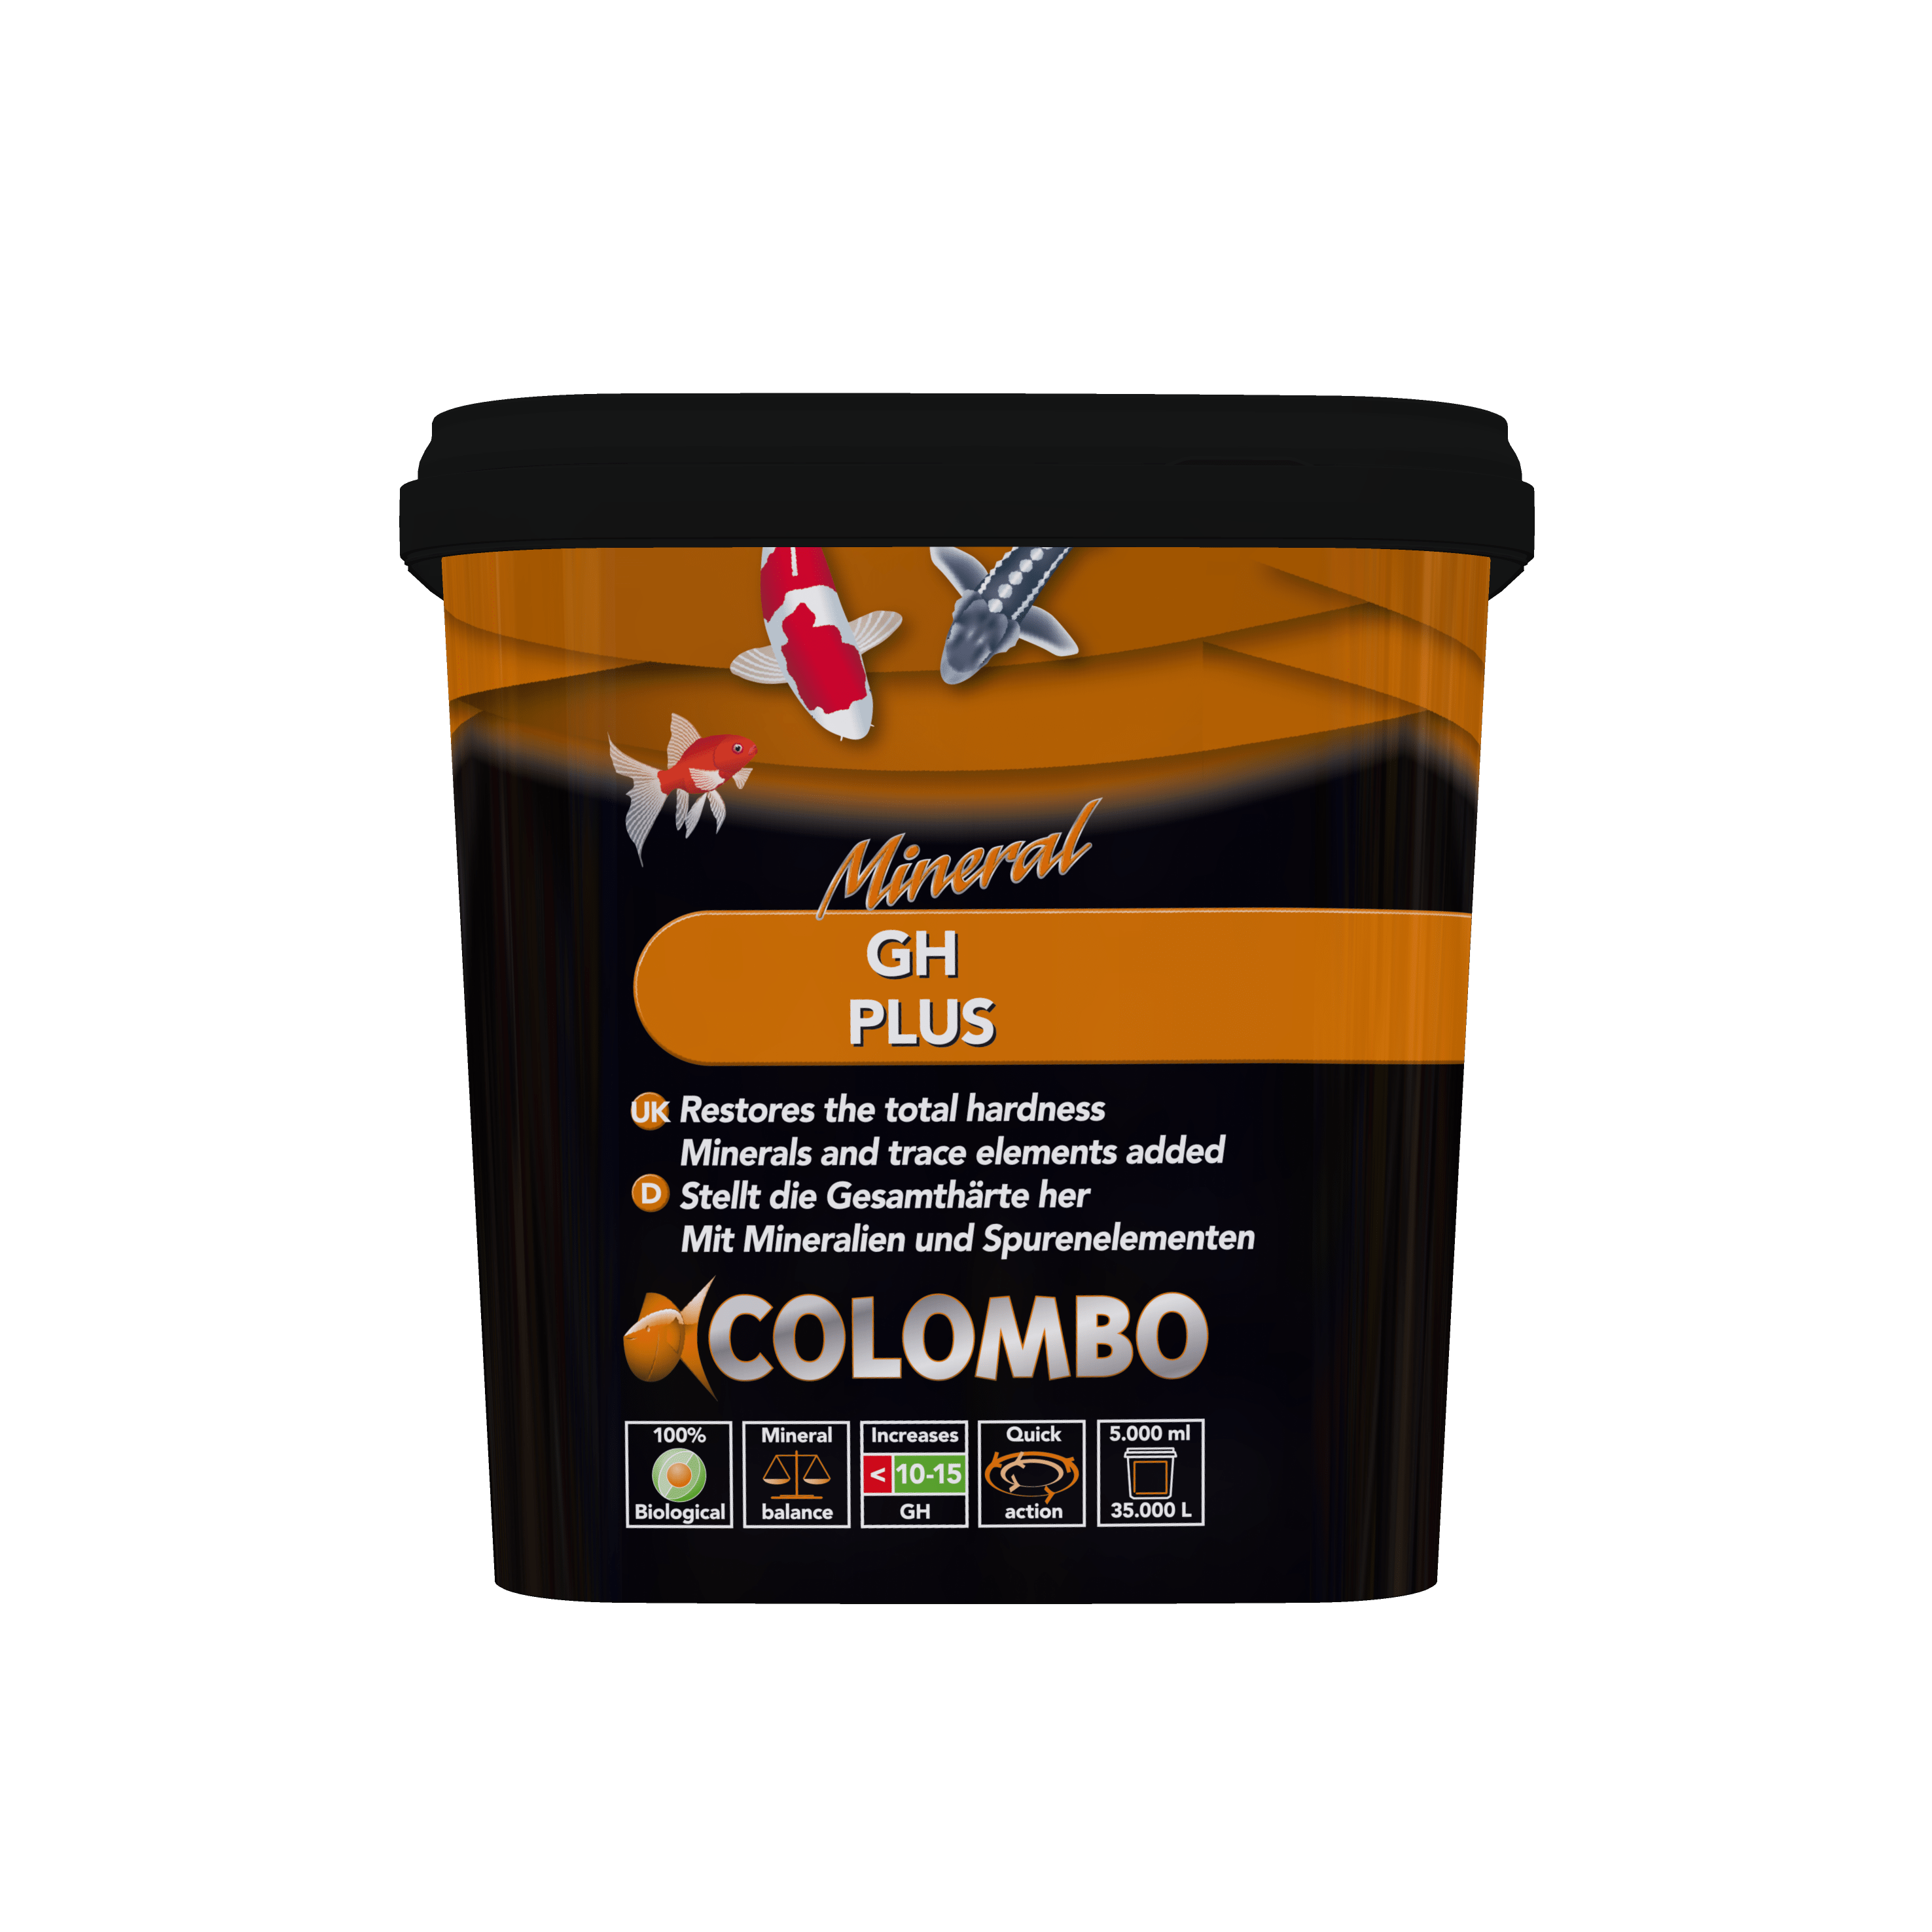 Colombo Duretés Colombo GH+ 5000ml - Augmente la dureté totale 8715897041938 05020130